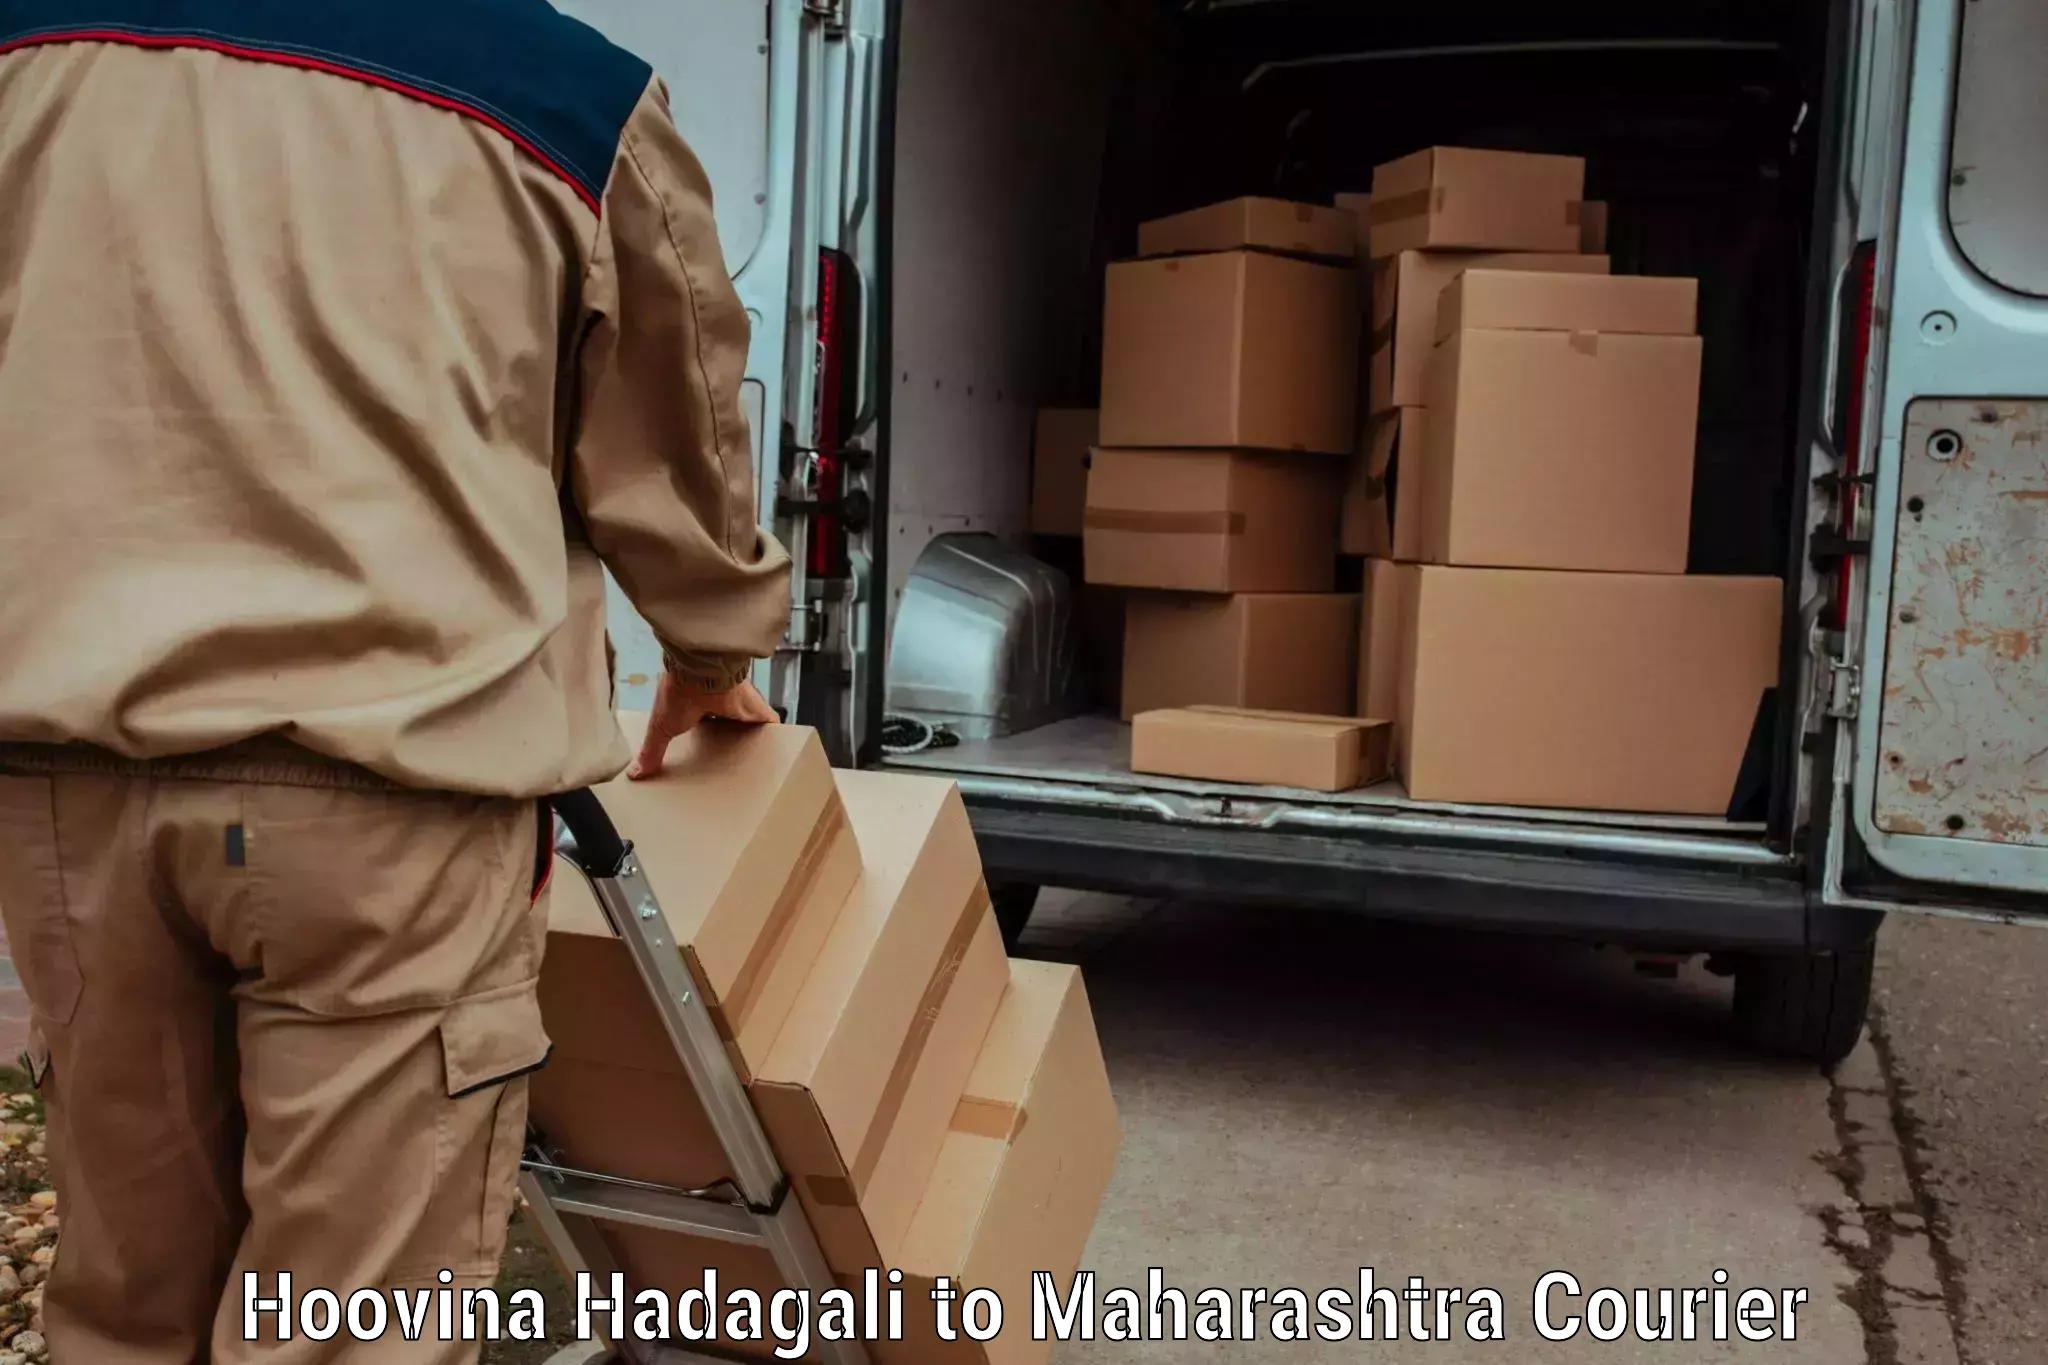 Baggage shipping experience in Hoovina Hadagali to Maharashtra